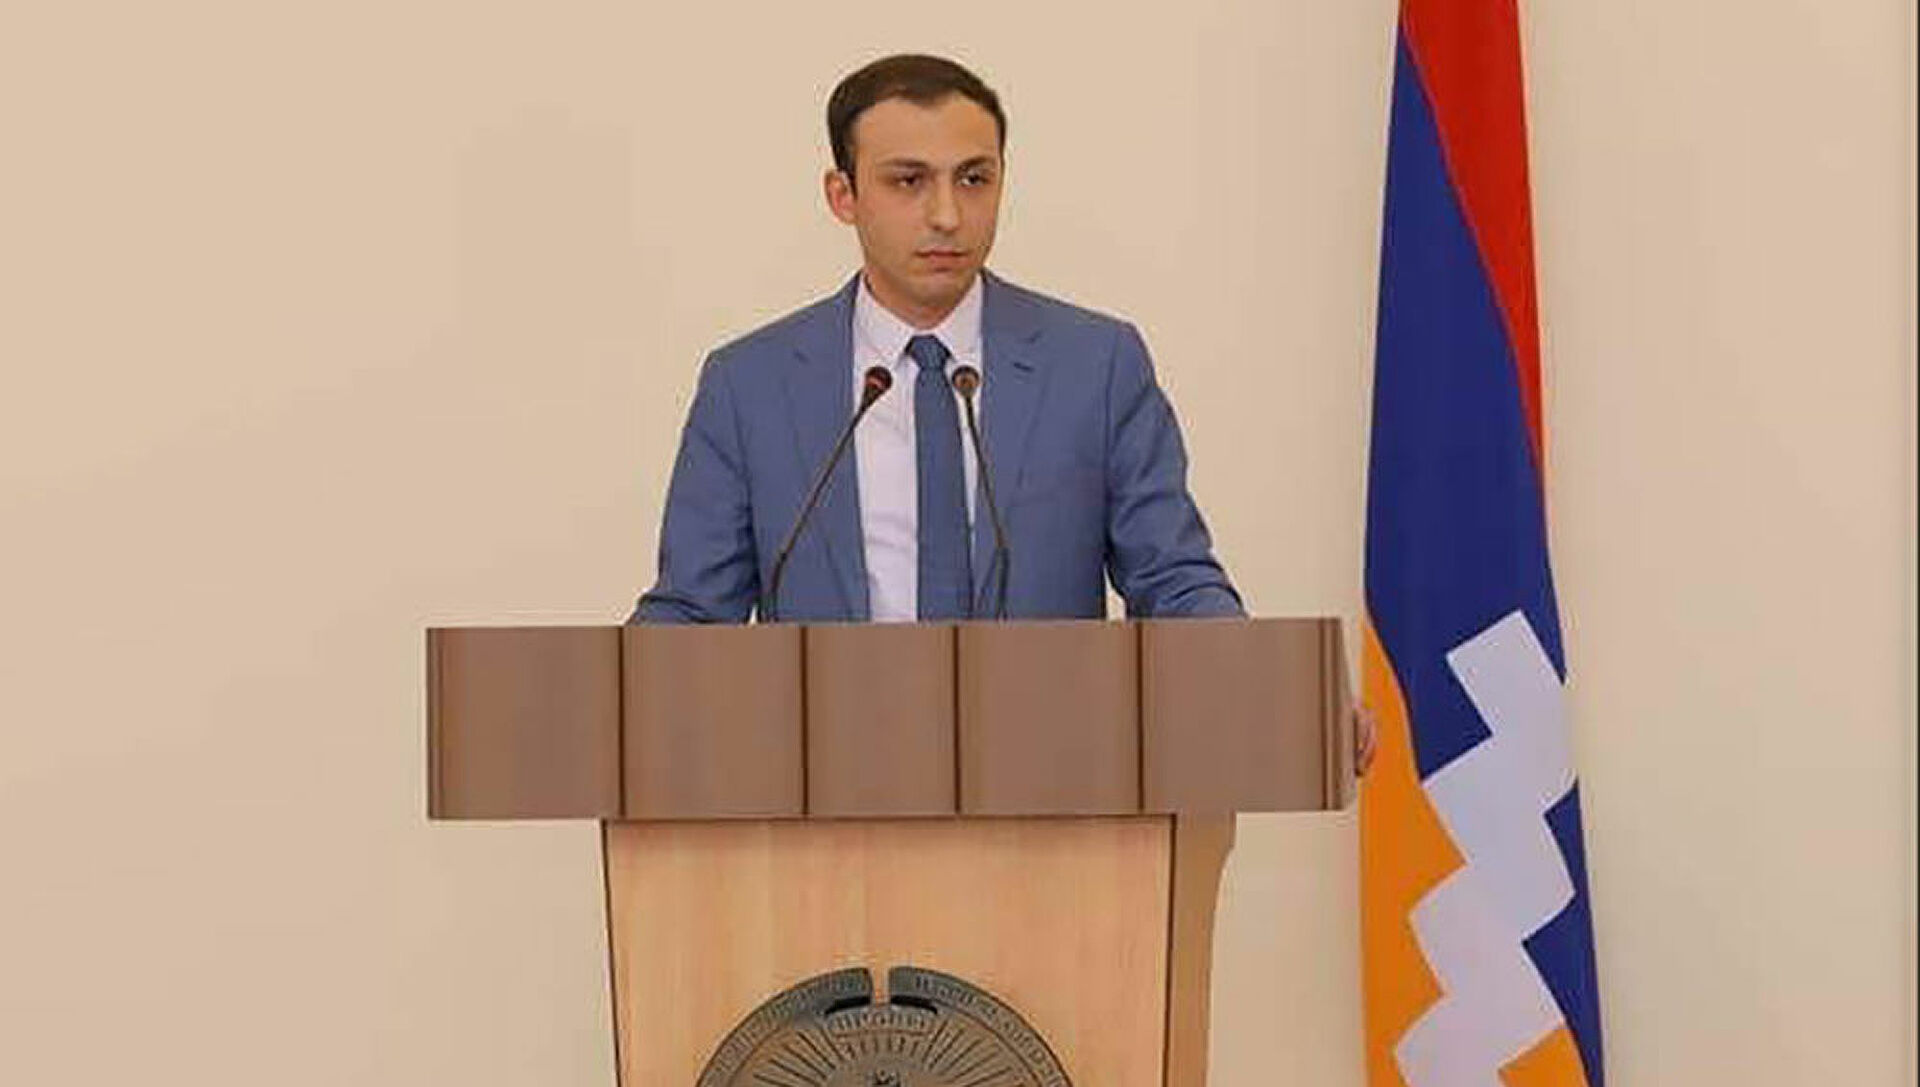 Ադրբեջանը համակարգված պայքար է տանում Արցախում հայկական մշակութային արժեքների դեմ. ՄԻՊ